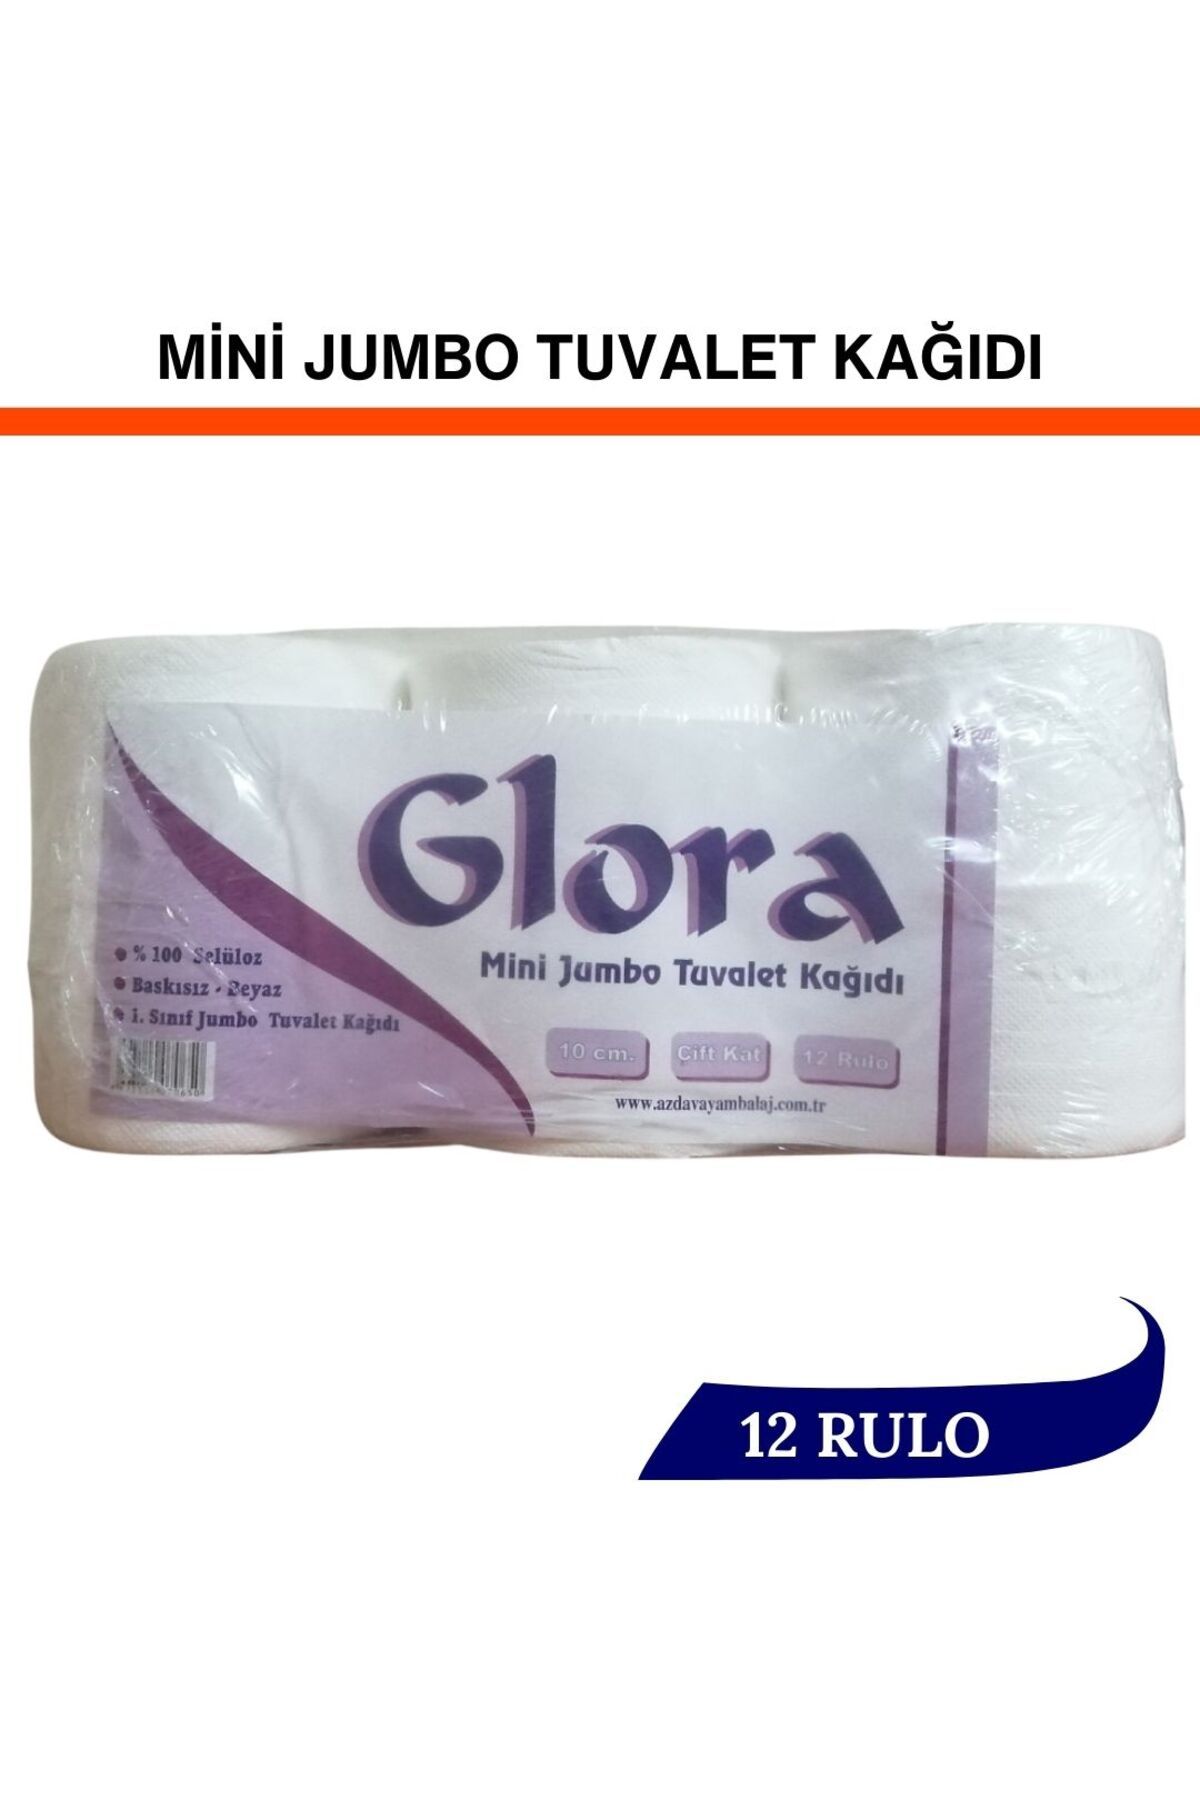 Glora 12 Rulo Mını Jumbo Tuvalet Kağıdı